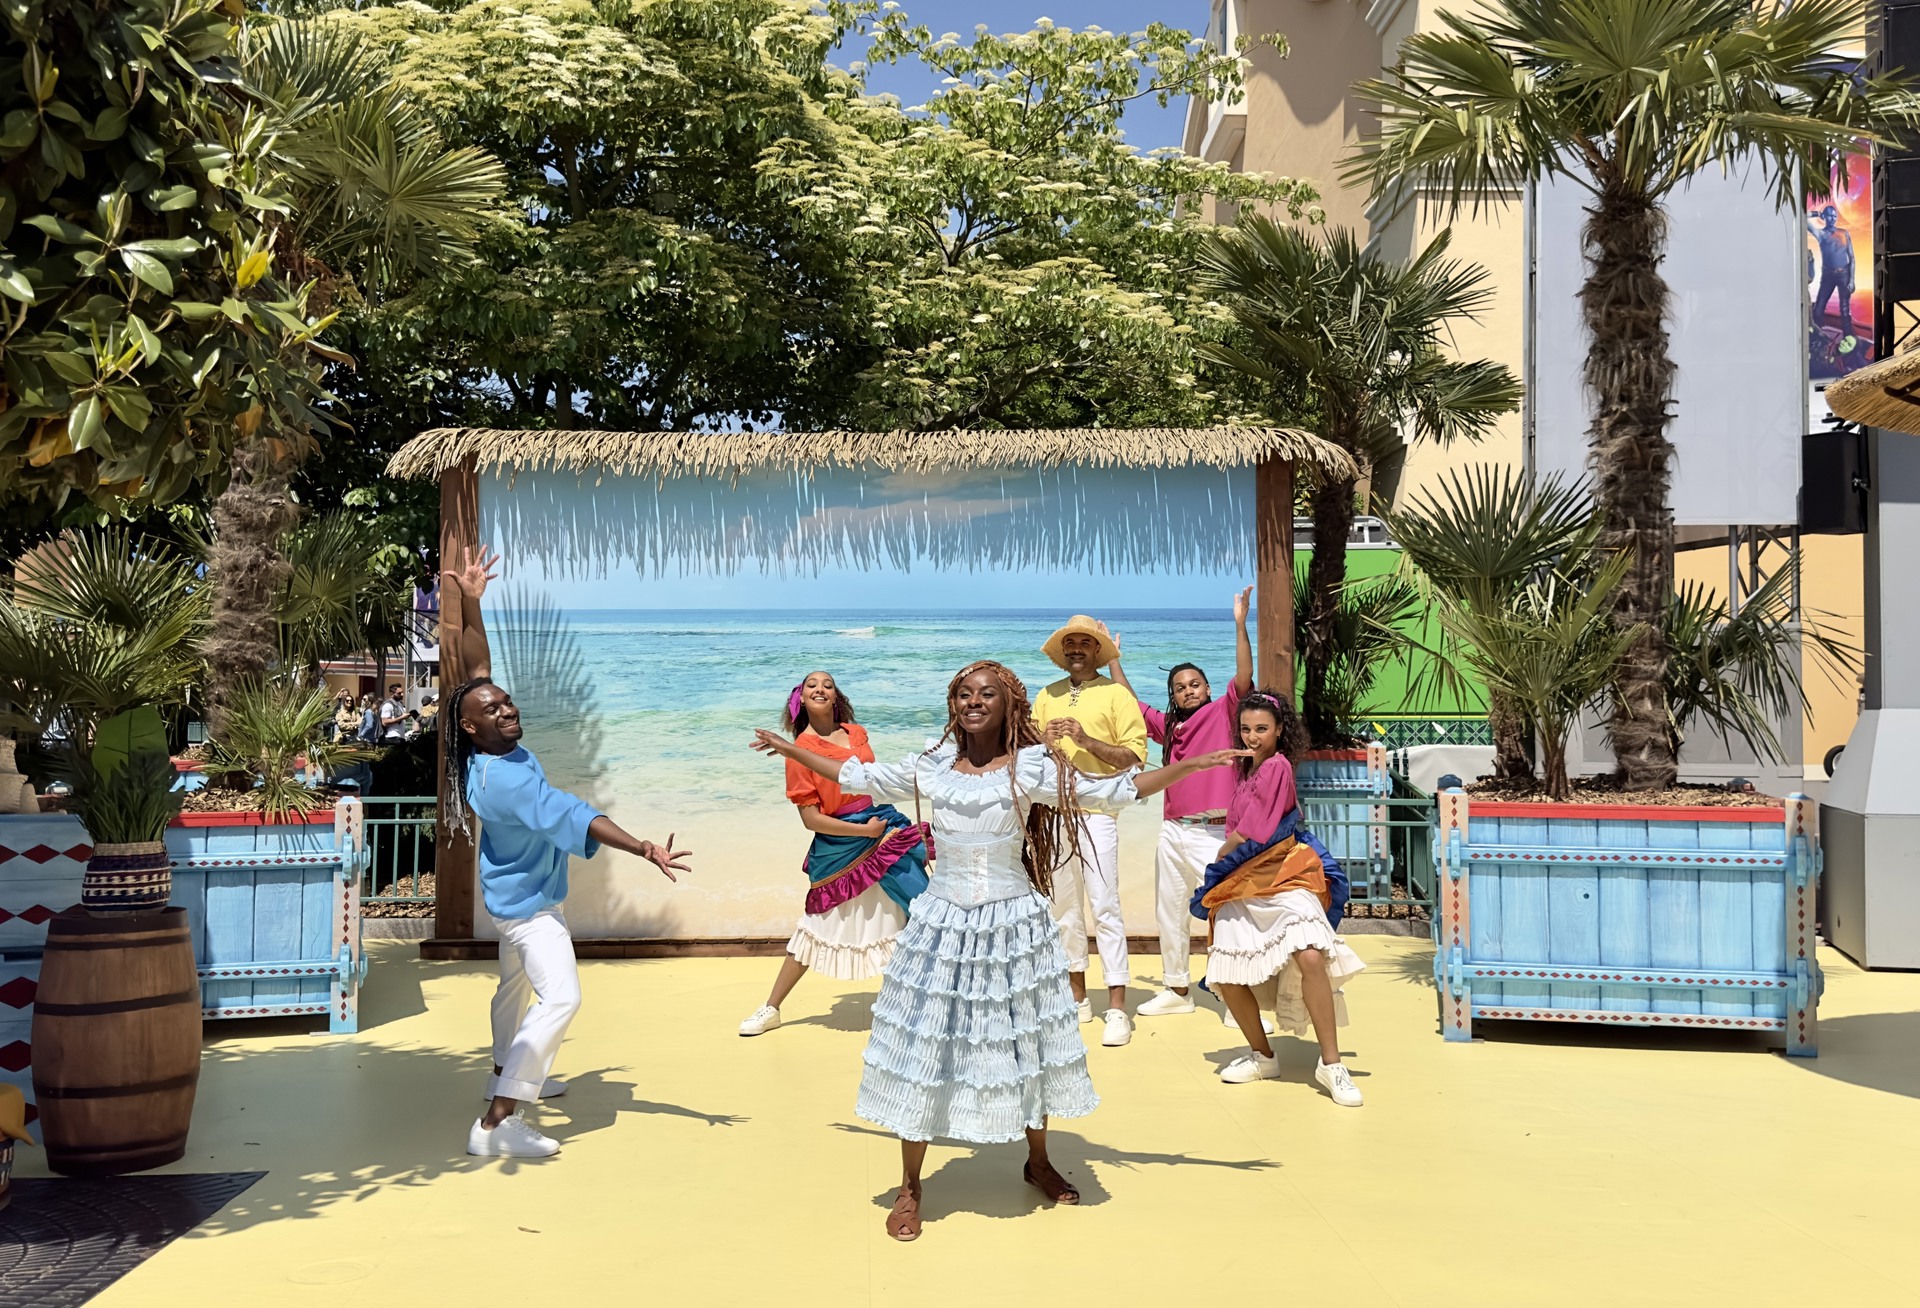 Disneyland Paris viert de release van “The Little Mermaid” met nieuwe show